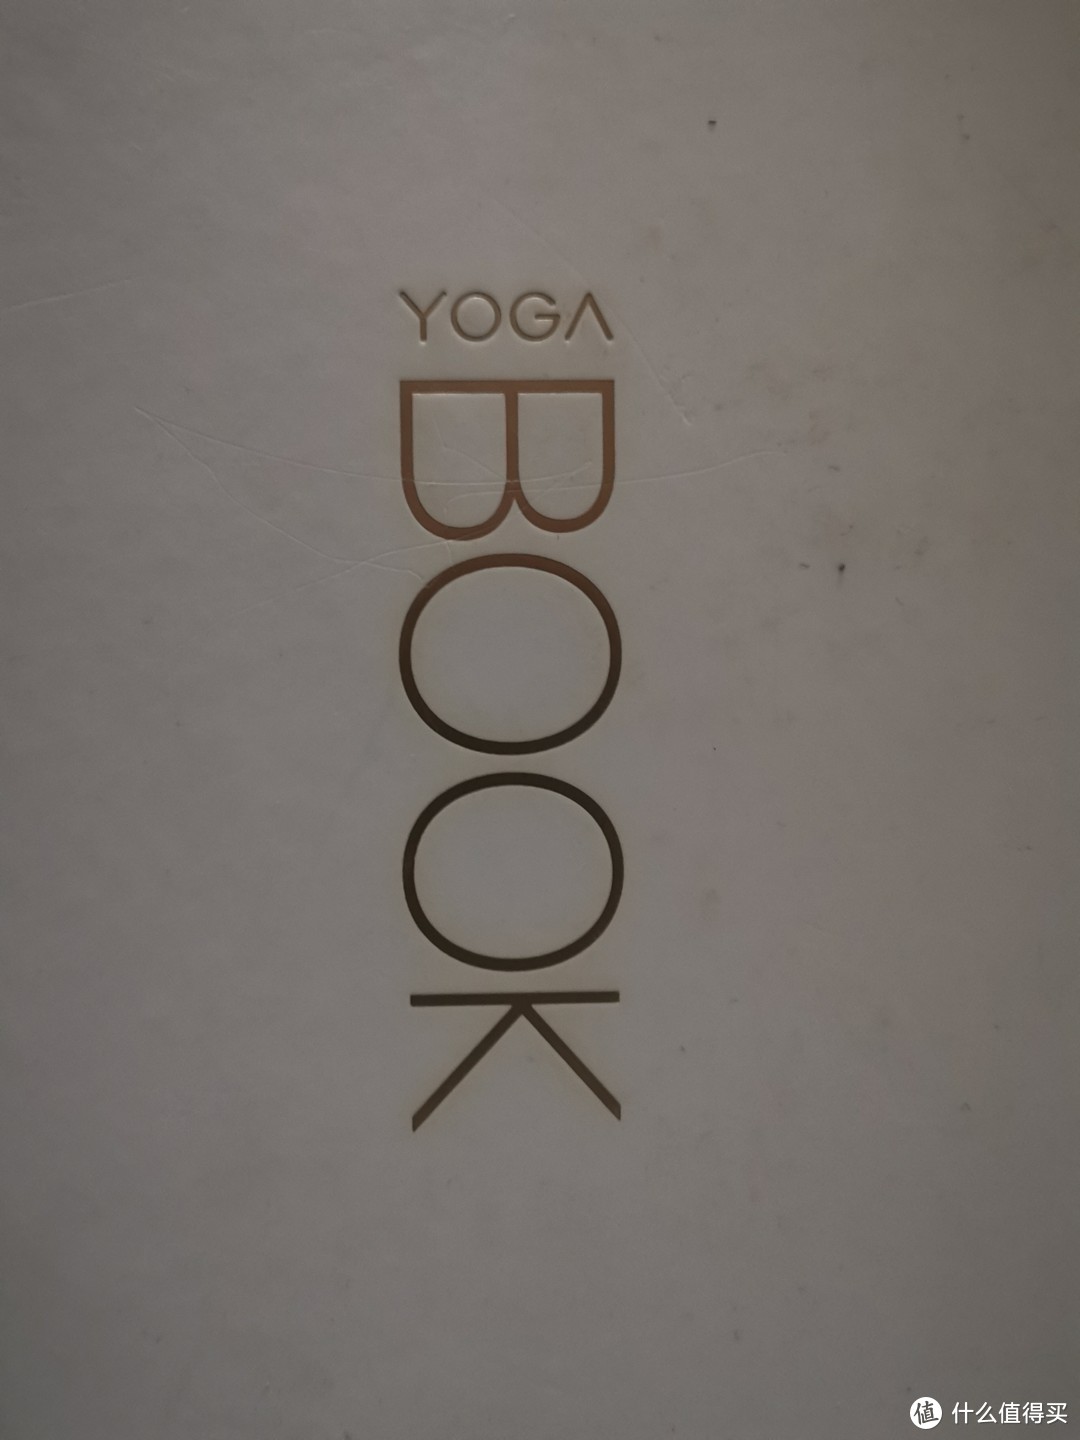 最接近笔记本的笔记本——联想yogabook